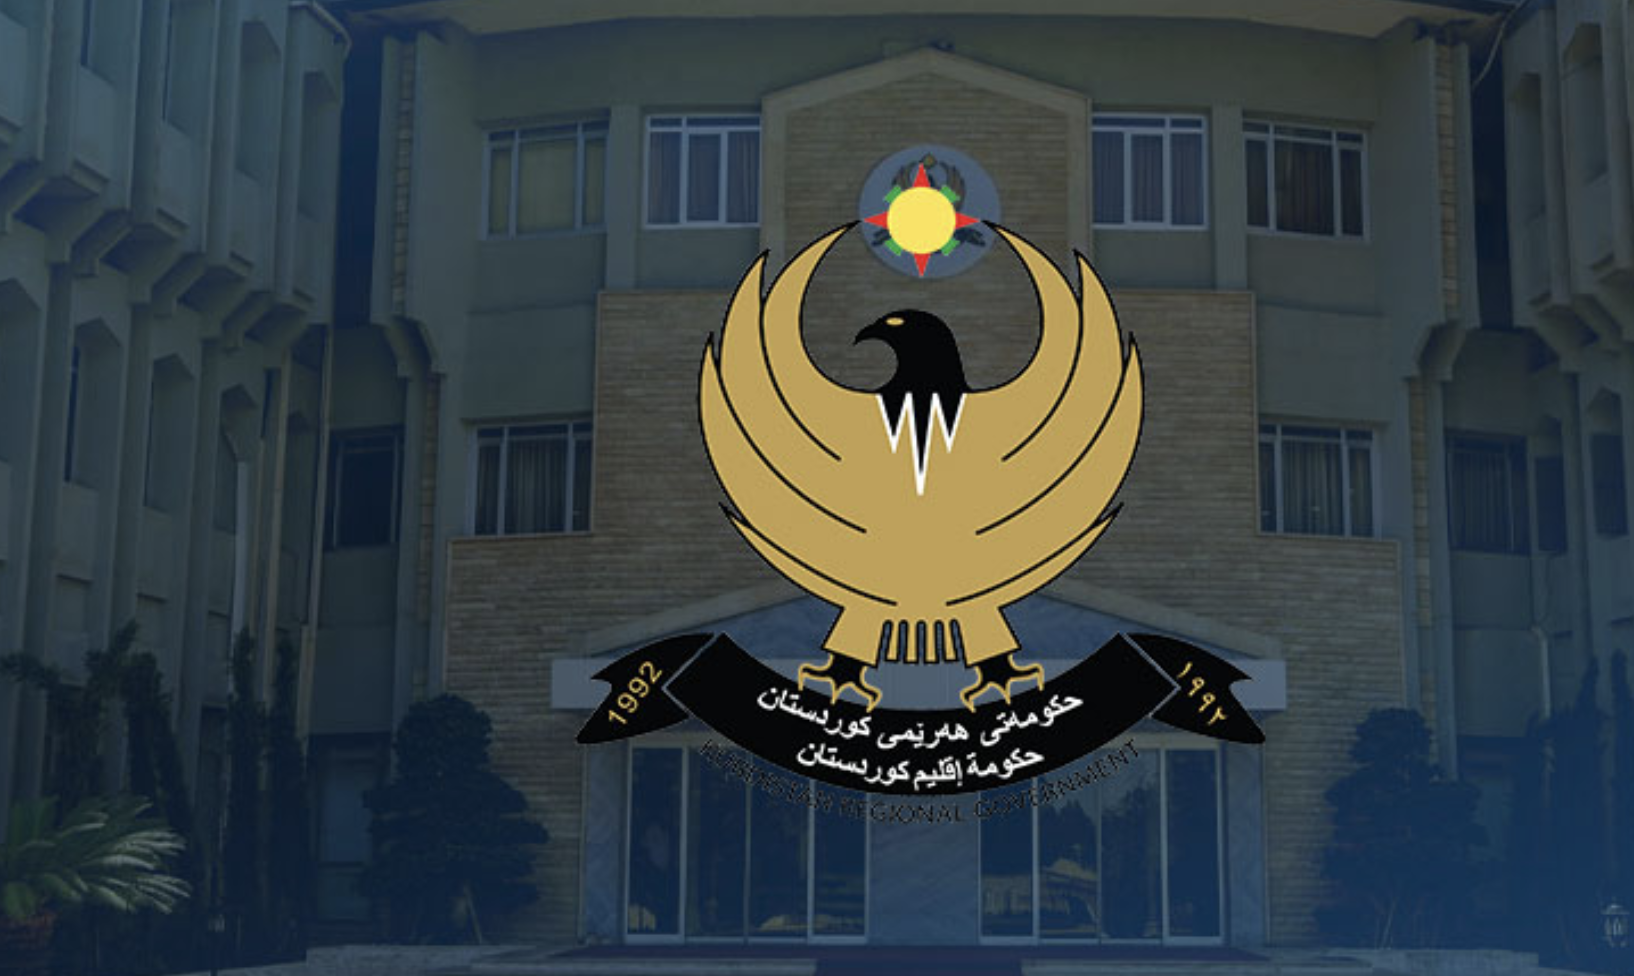 حكومة كوردستان: لا يوجد أي مقر أو قاعدة إسرائيلية في الاقليم